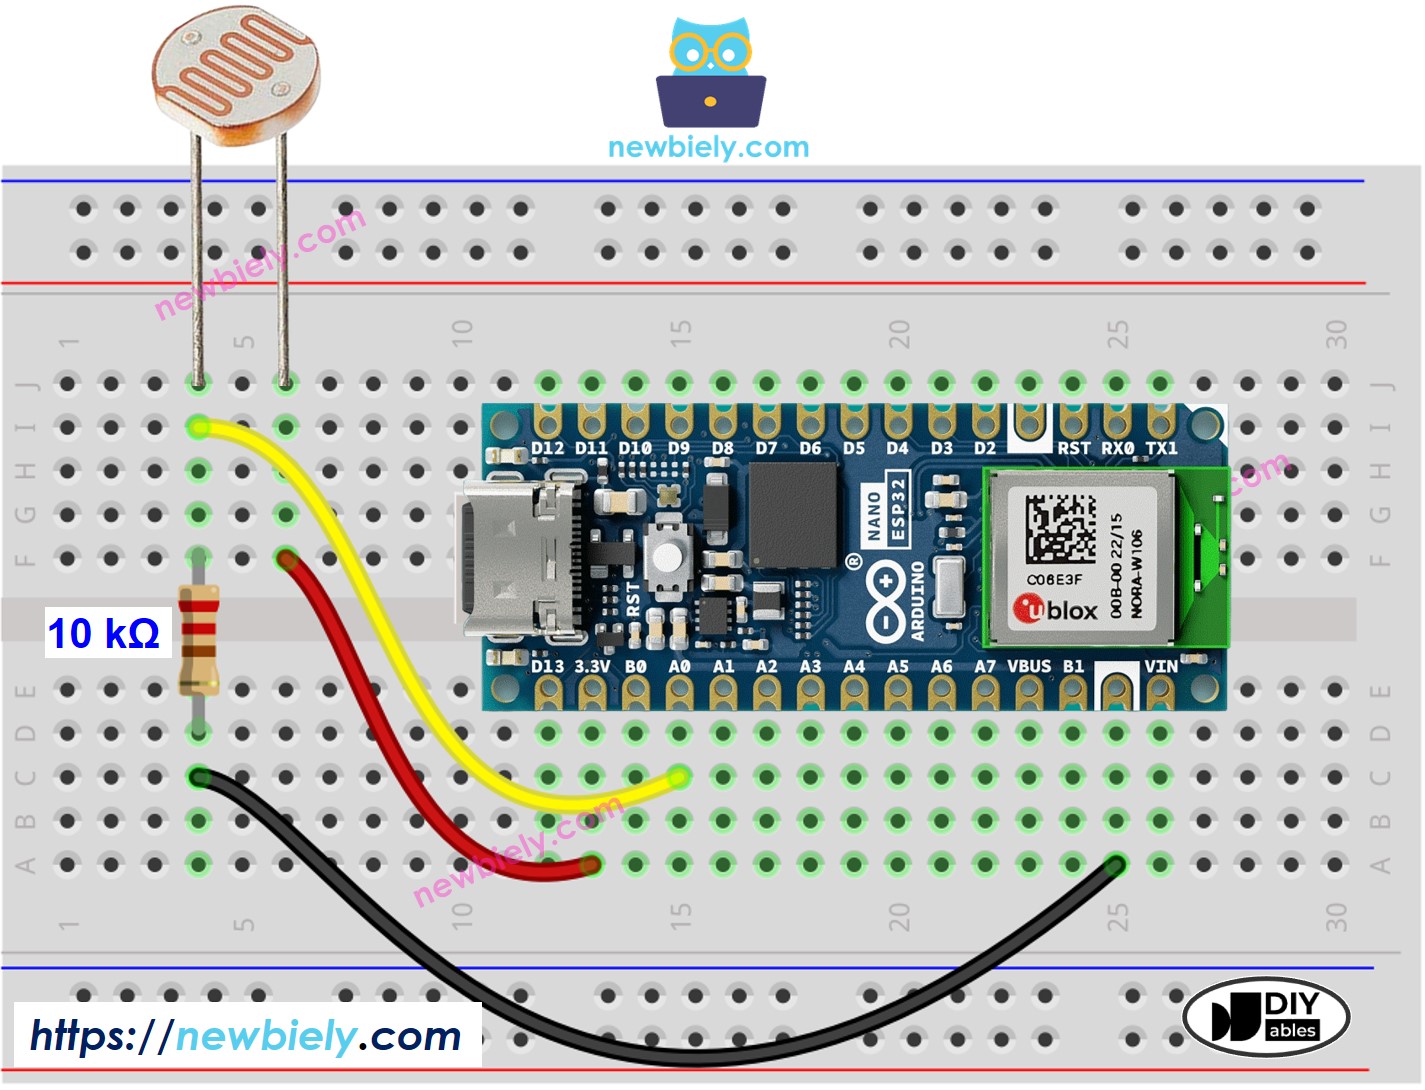 The wiring diagram between Arduino Nano ESP32 and Light Sensor